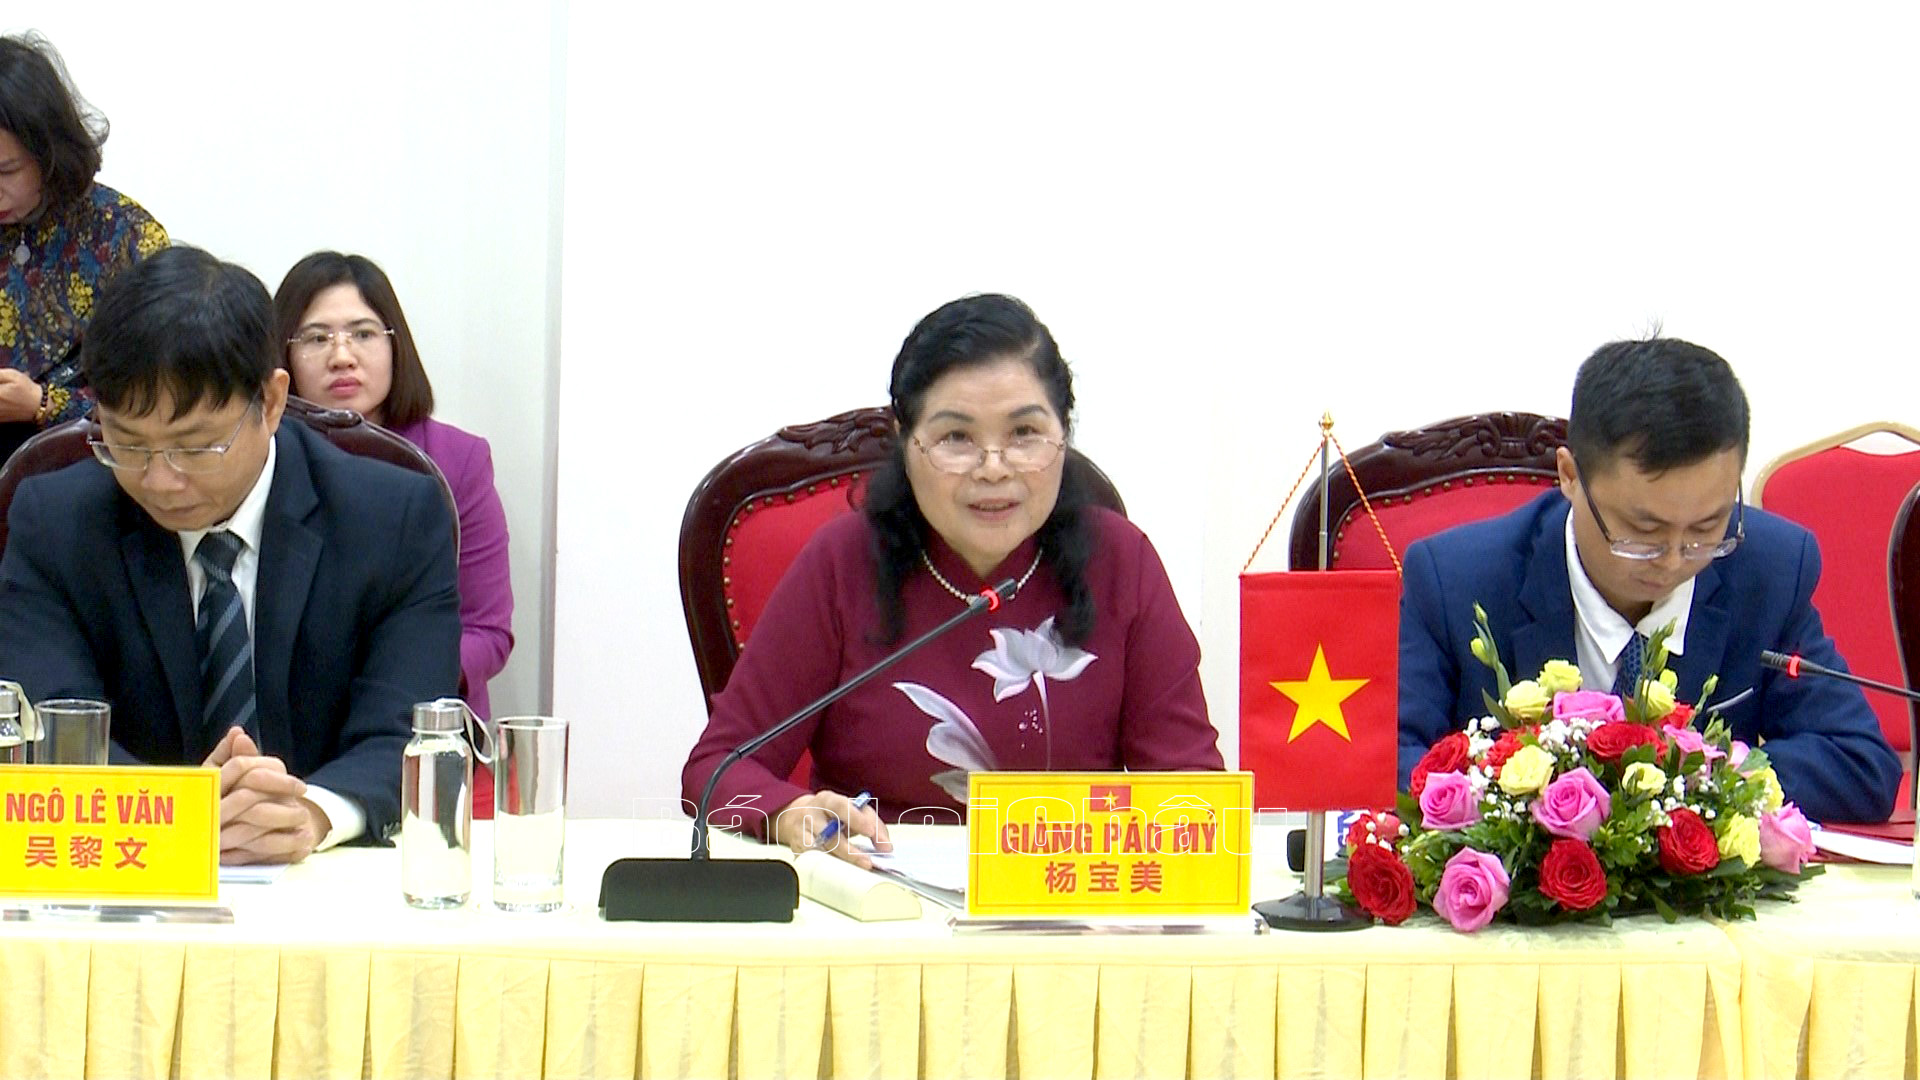 Bí thư Tỉnh ủy Lai Châu Giàng Páo Mỷ phát biểu tại buổi hội kiến.